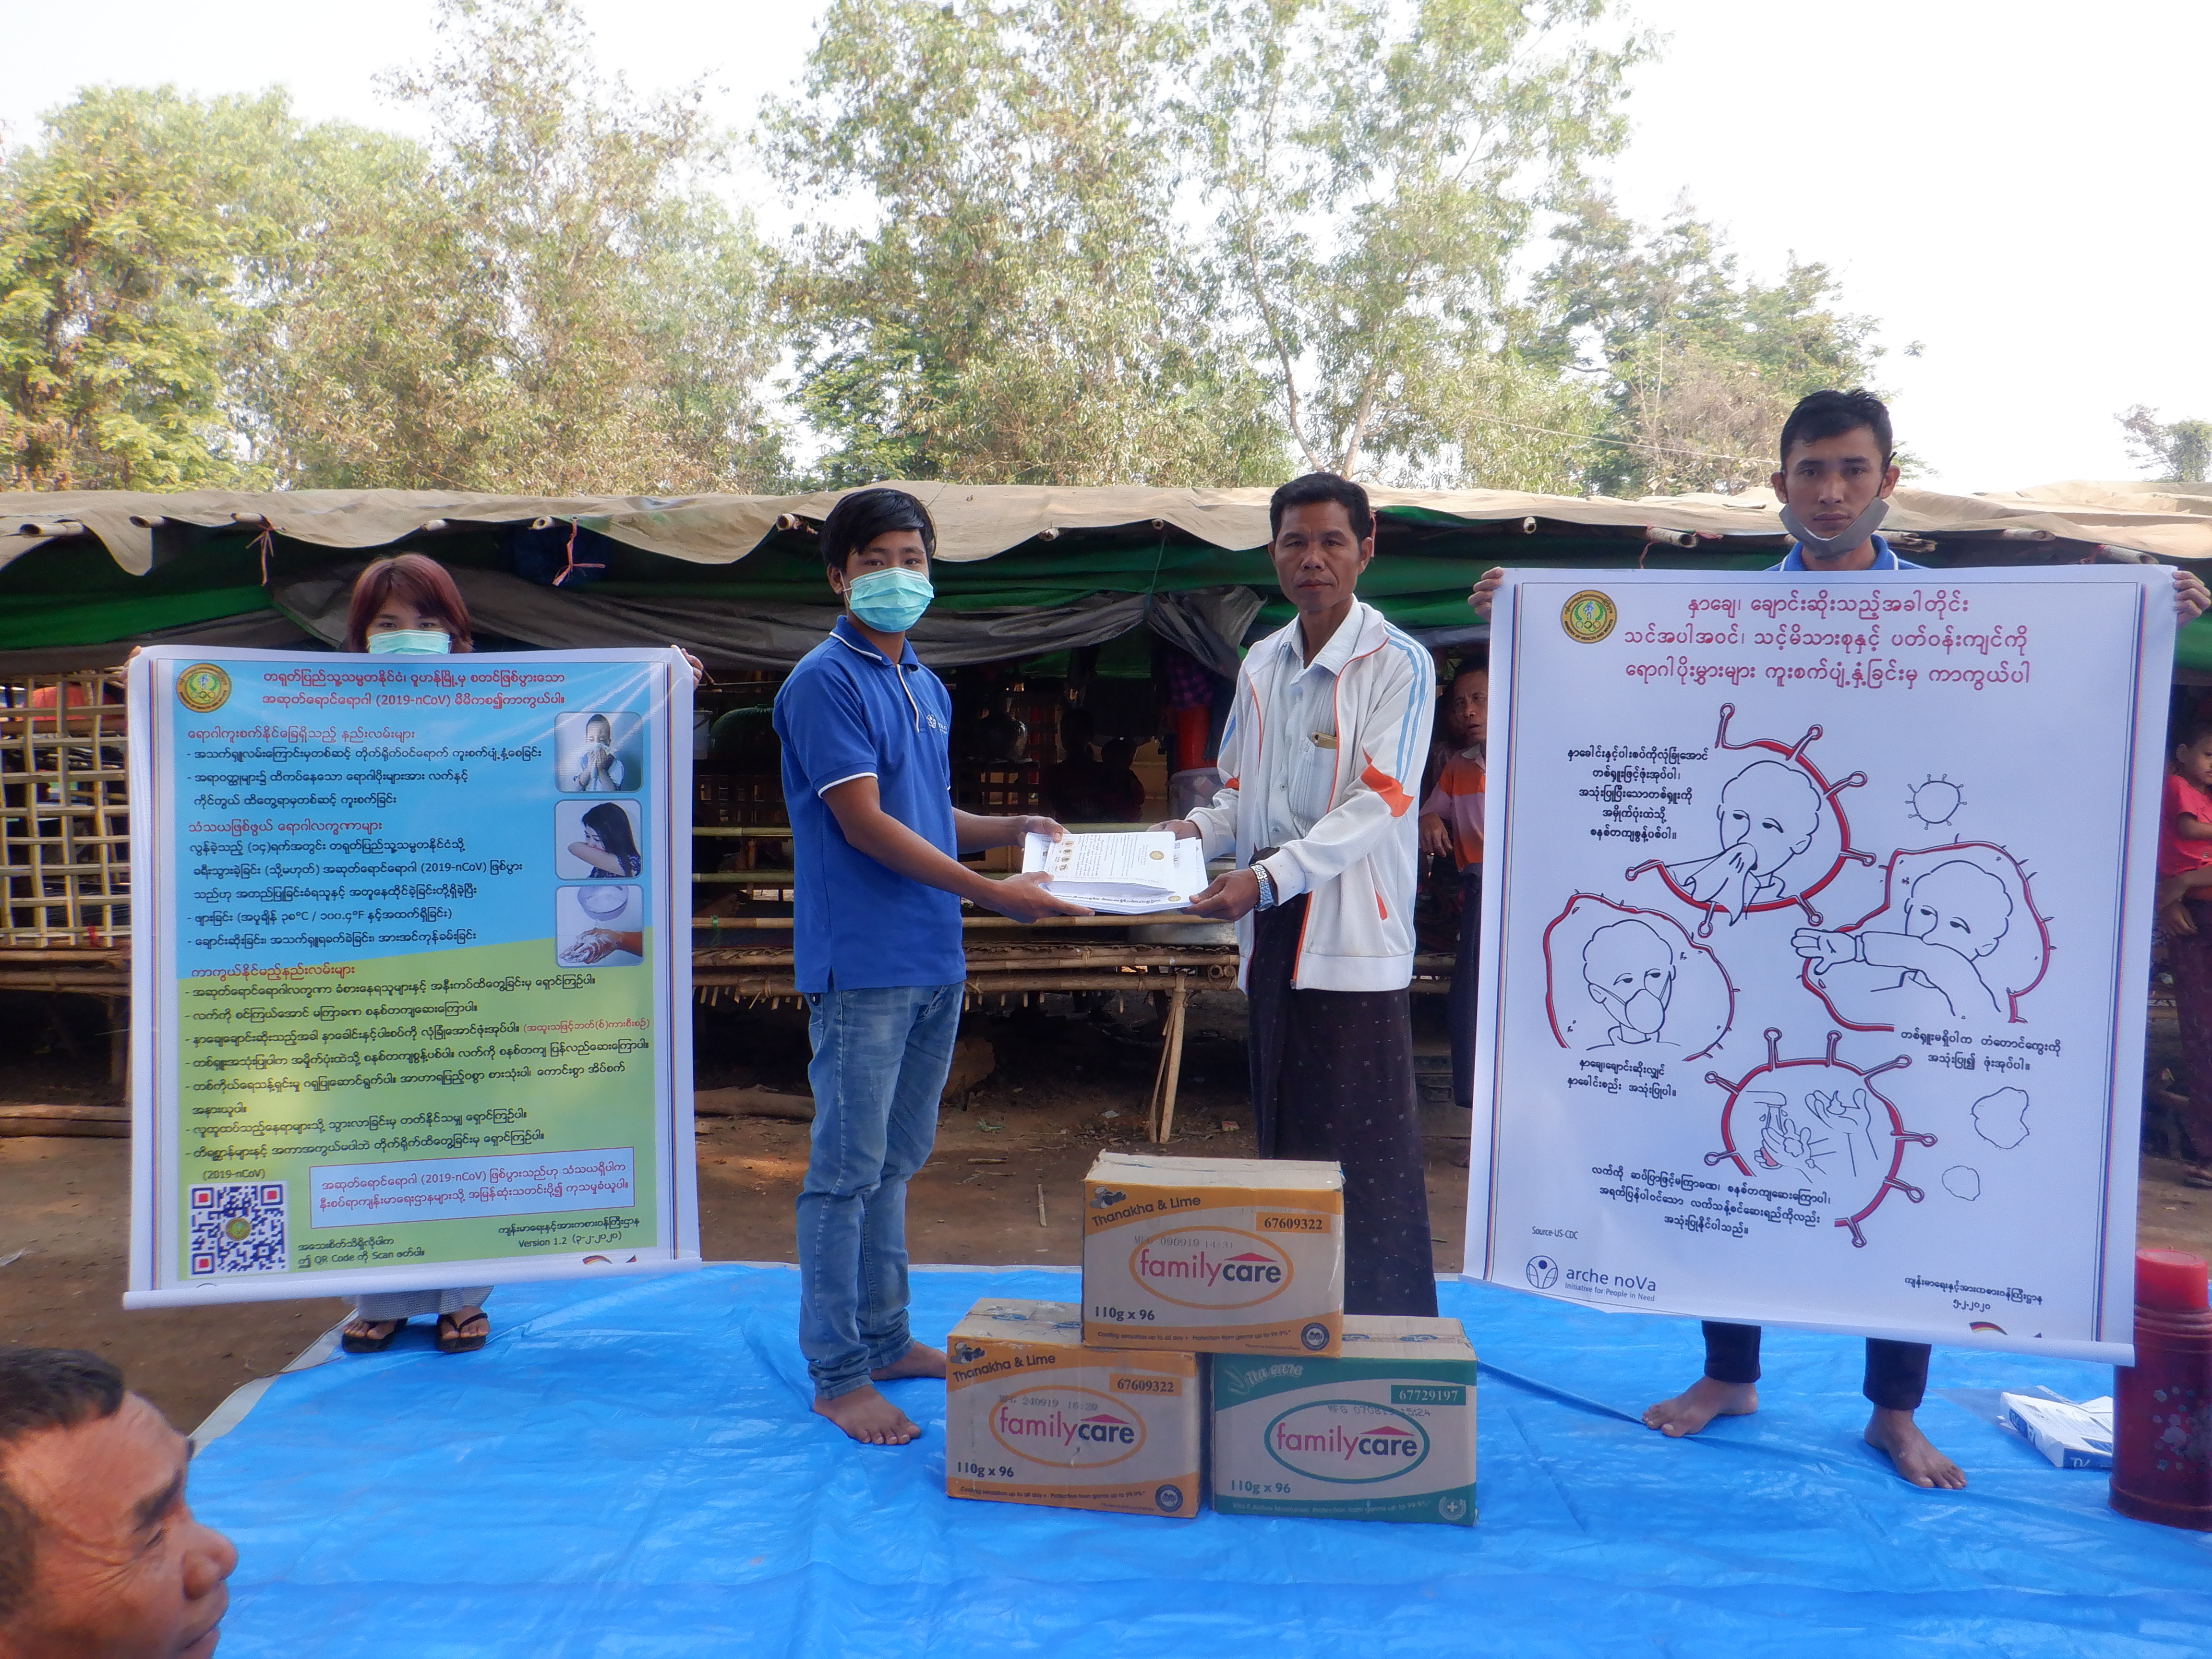 Menschen aus Myanmar zeigen Päckchen und Plakate zur VErteilung